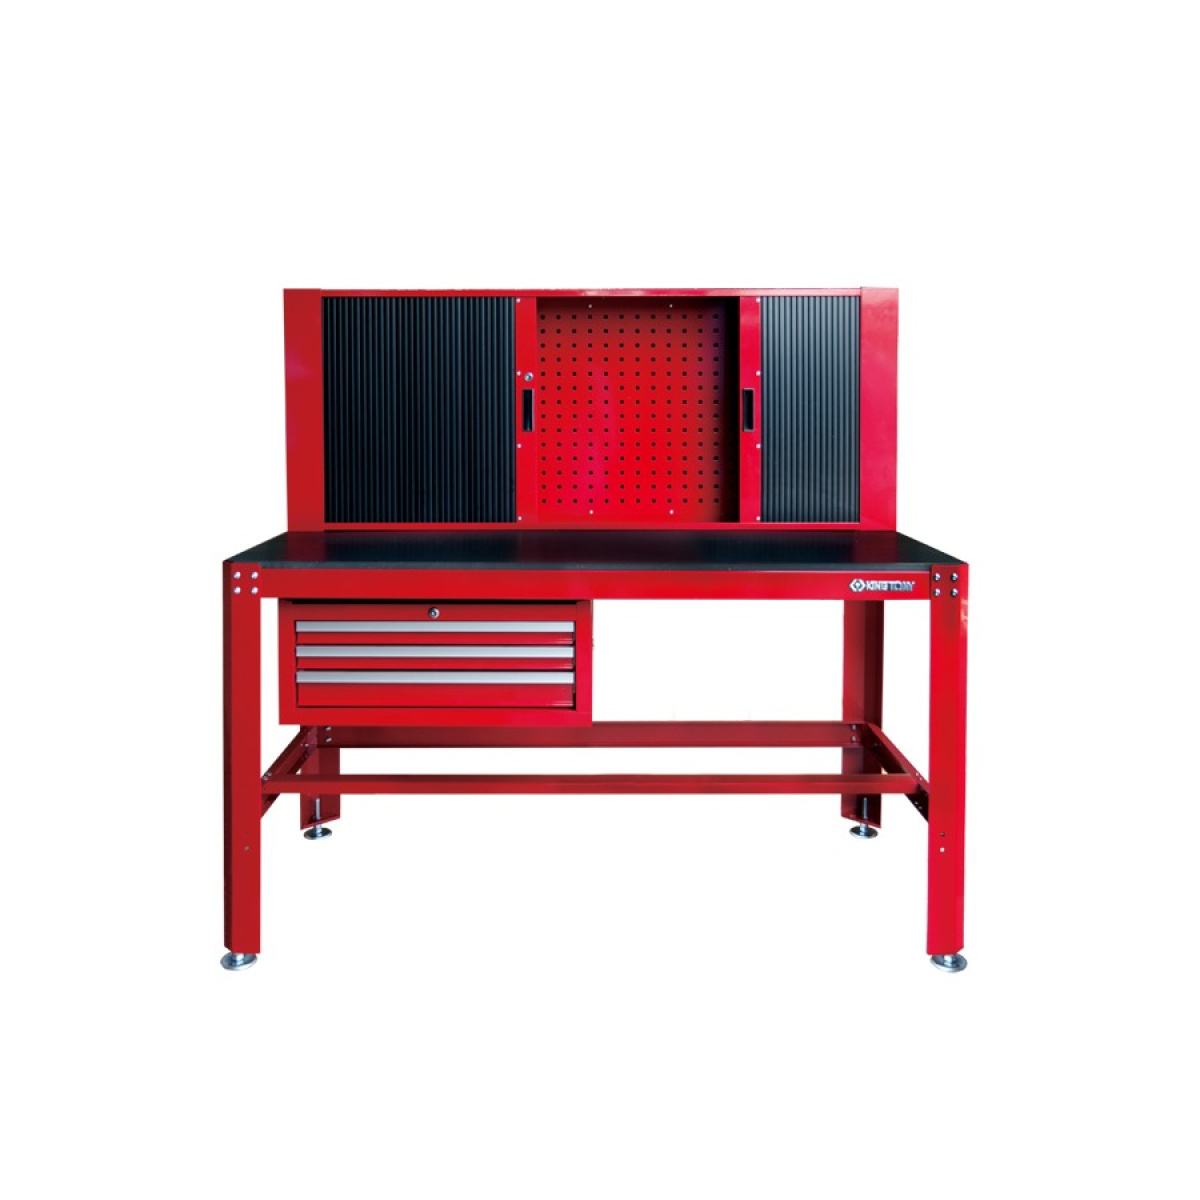 Stůl pracovní, 3 šuplíky, 2 skříňky s roletou + stěna, červený